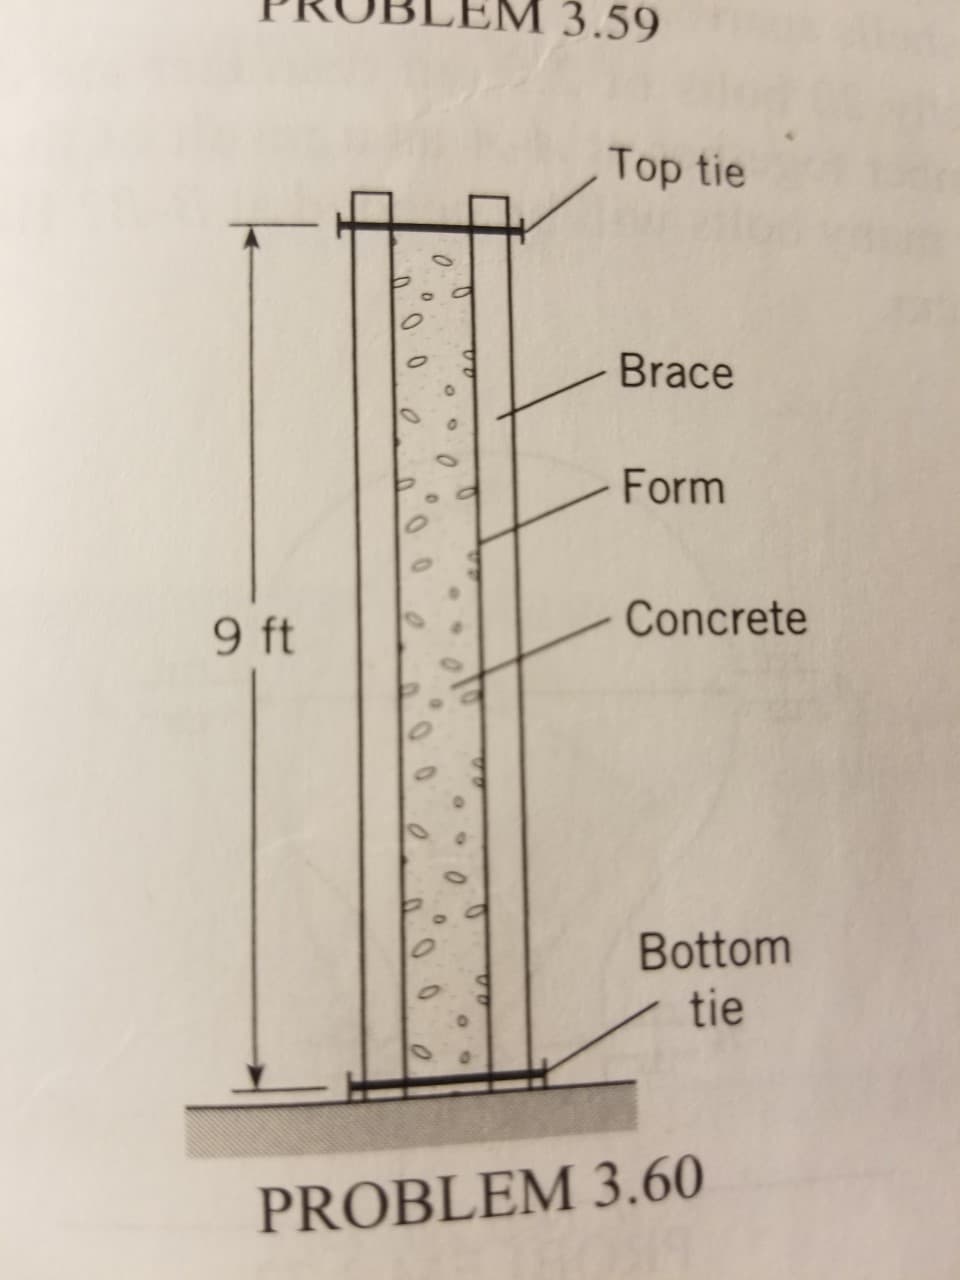 3.59
Top tie
Brace
Form
Concrete
9 ft
Bottom
tie
PROBLEM 3.60
